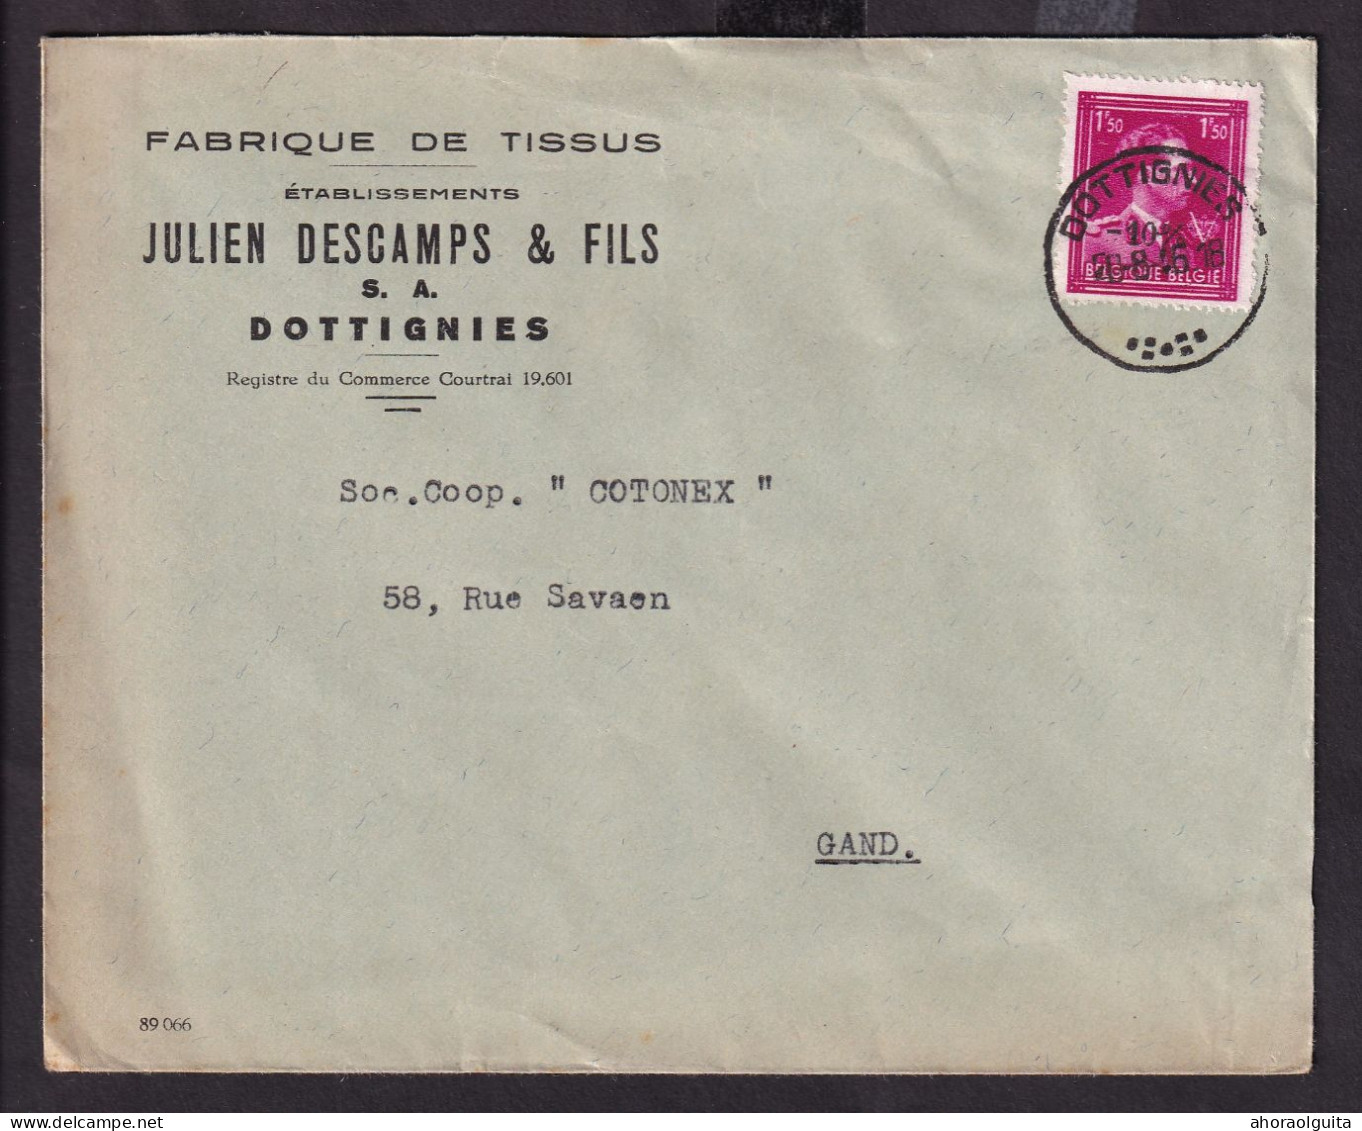 DDFF 289 -- 2 X Enveloppe TP Surcharge Locale Ou Typo Moins 10 % DOTTIGNIES 1946 - Entete Tissus Julien Descamps - 1946 -10%